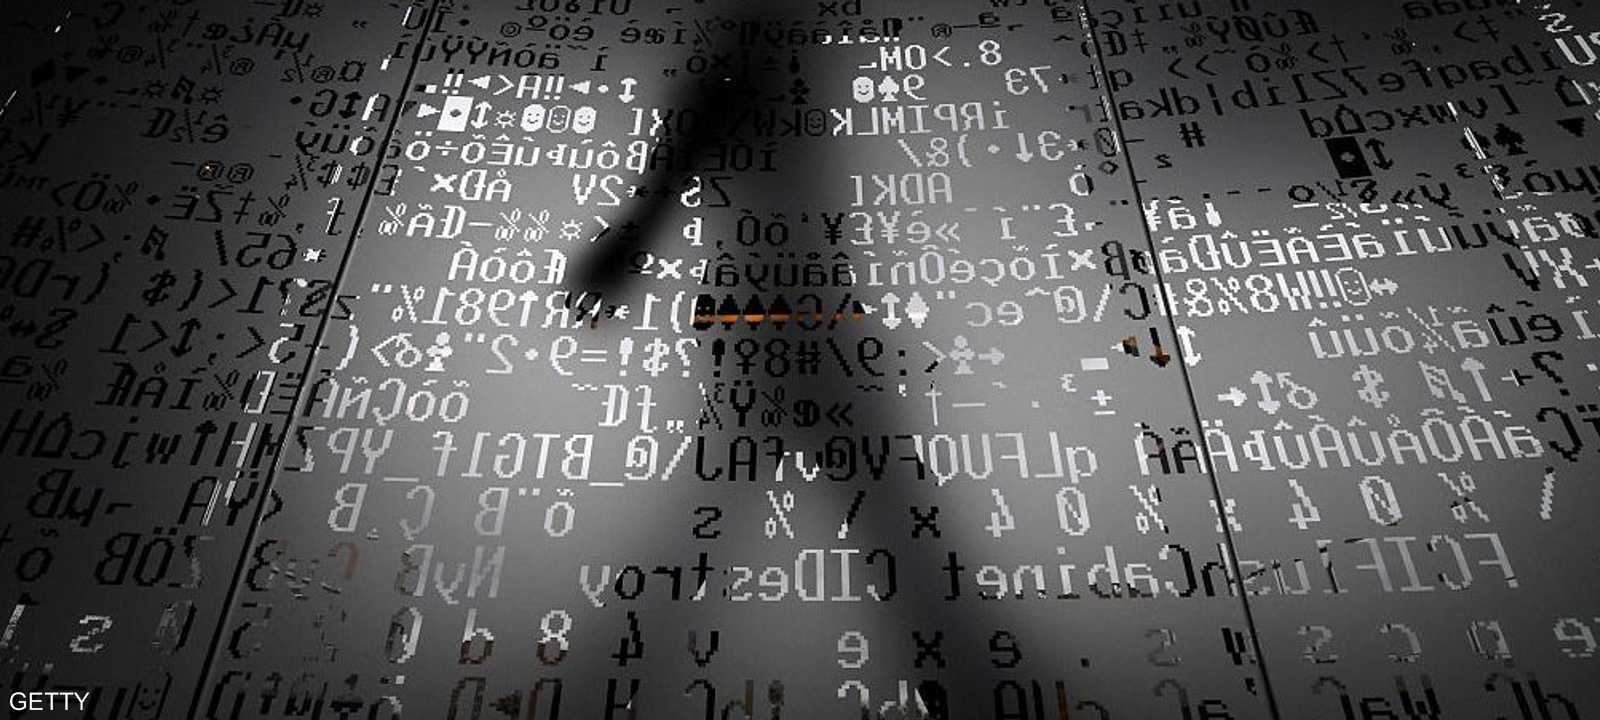 الهجوم الإلكتروني ضرب أكثر من 100 دولة في العالم